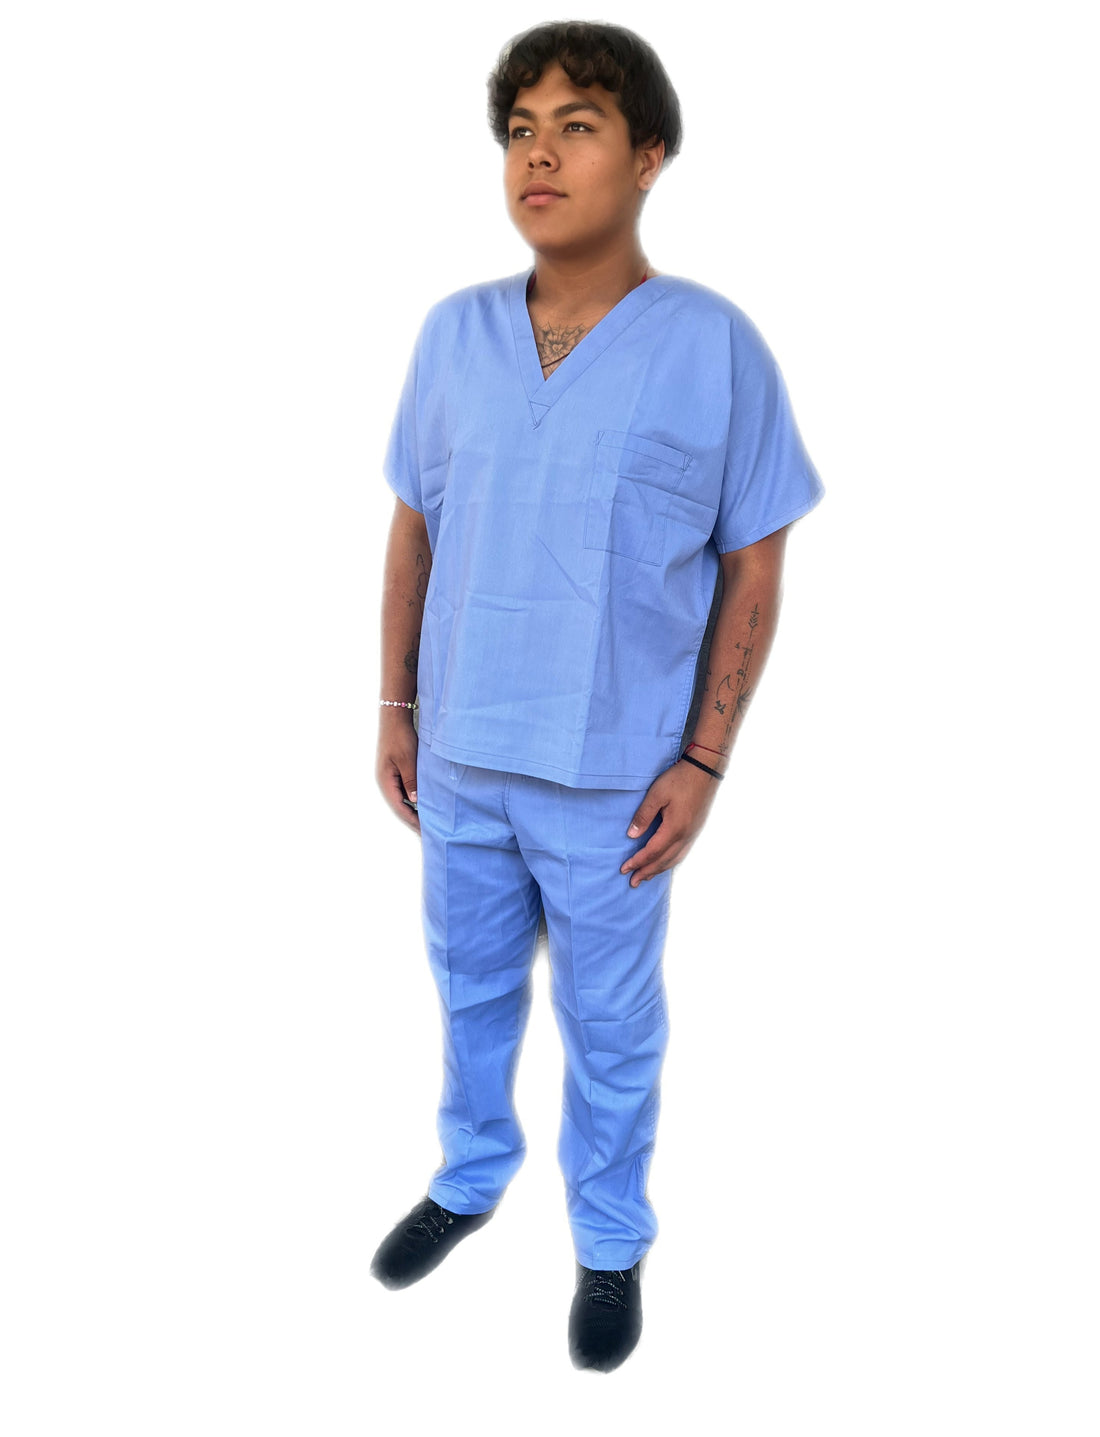 Pijama Quirúrgica de Hombre Uniformes Stanford 65% algodon